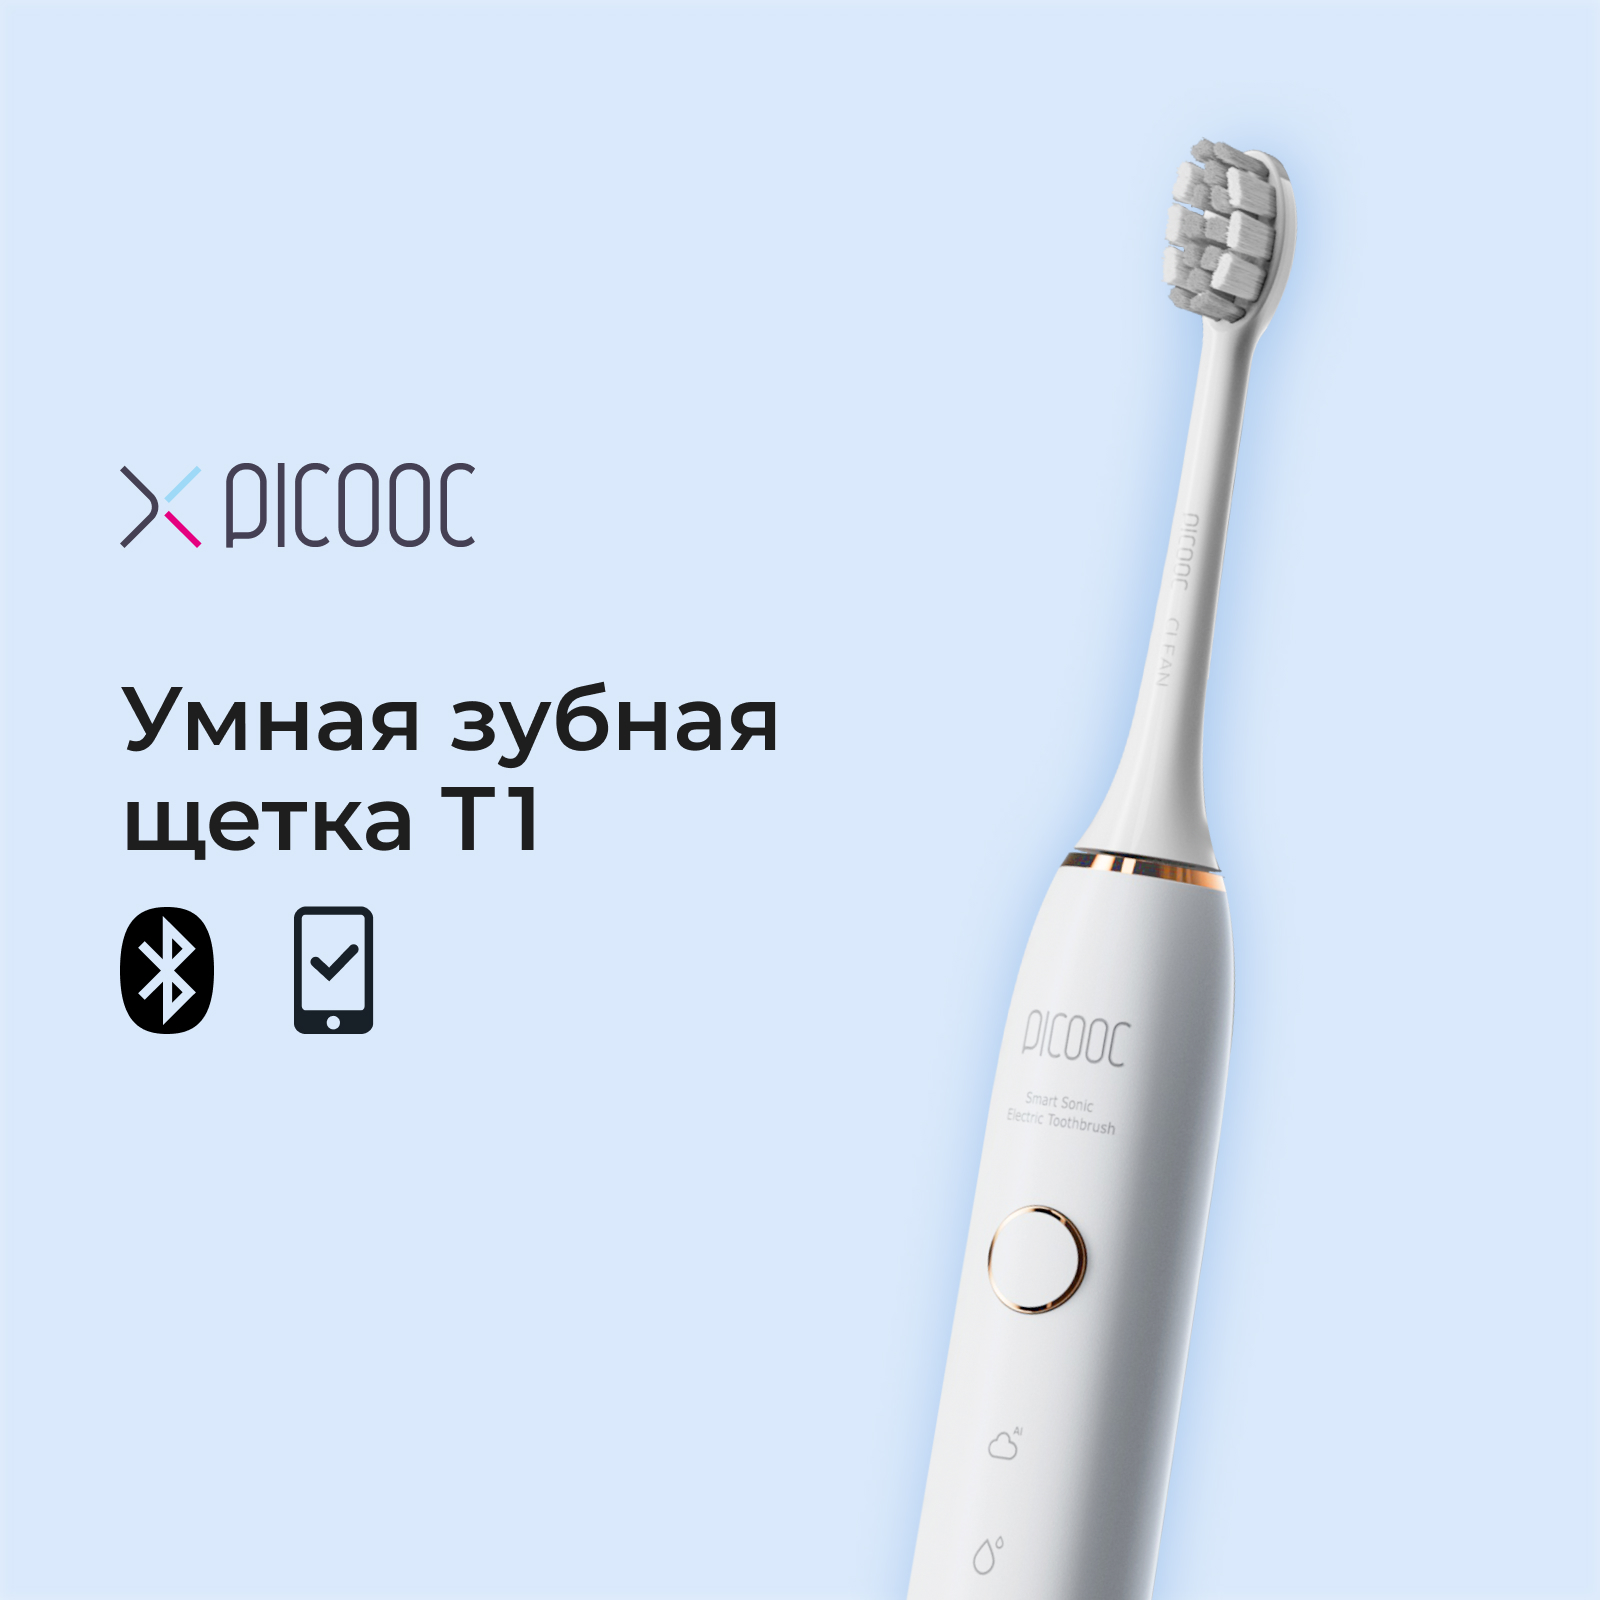 Электрическая зубная щетка Picooc T1 белая умный монитор артериального давления picooc x1 pro